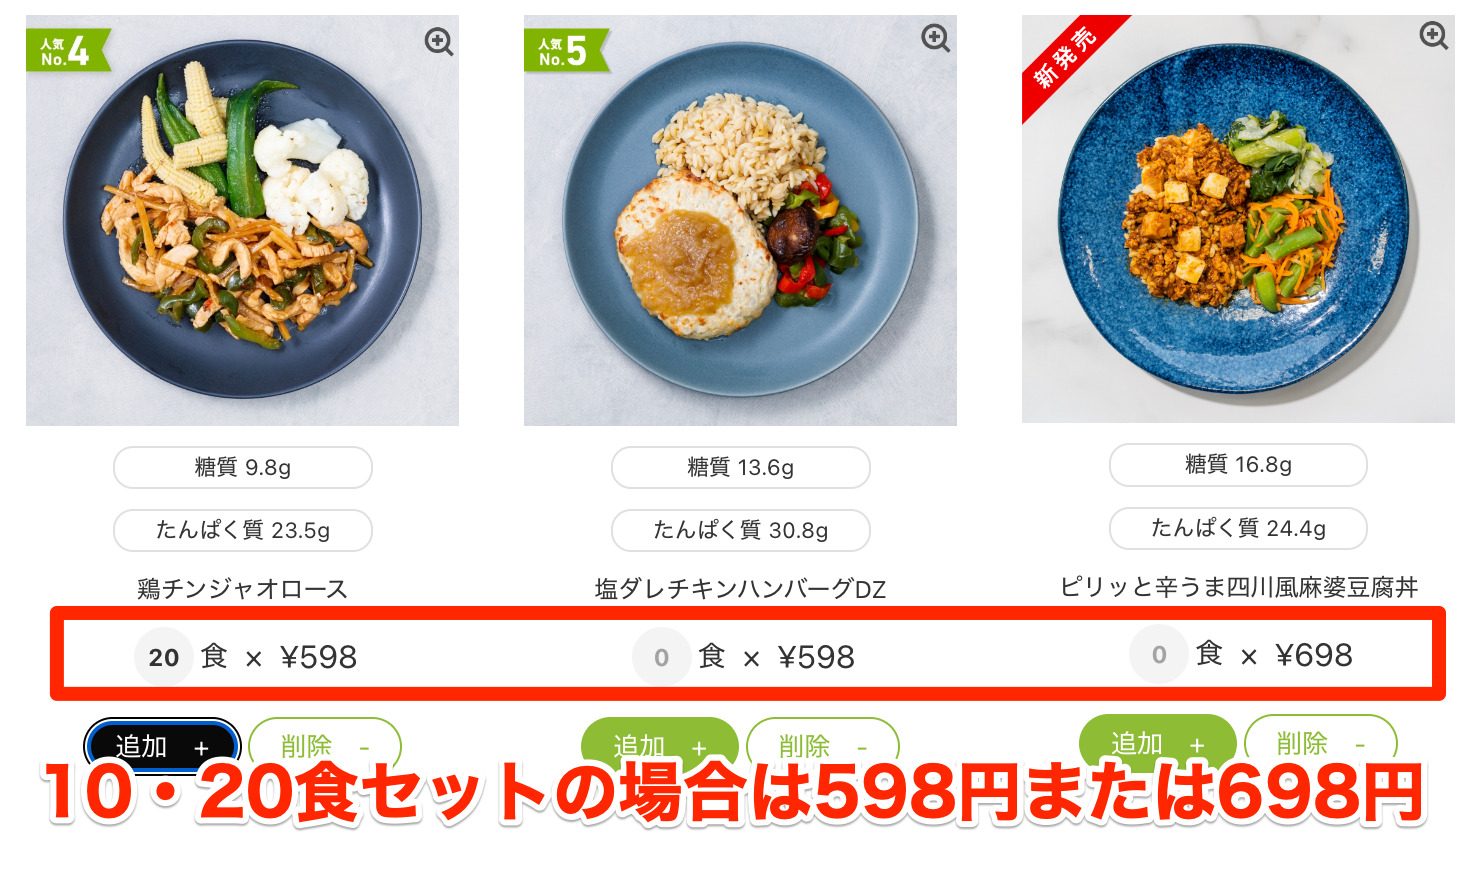 10食・20食セットをオーダーする場合、1食あたりの値段は598円または698円